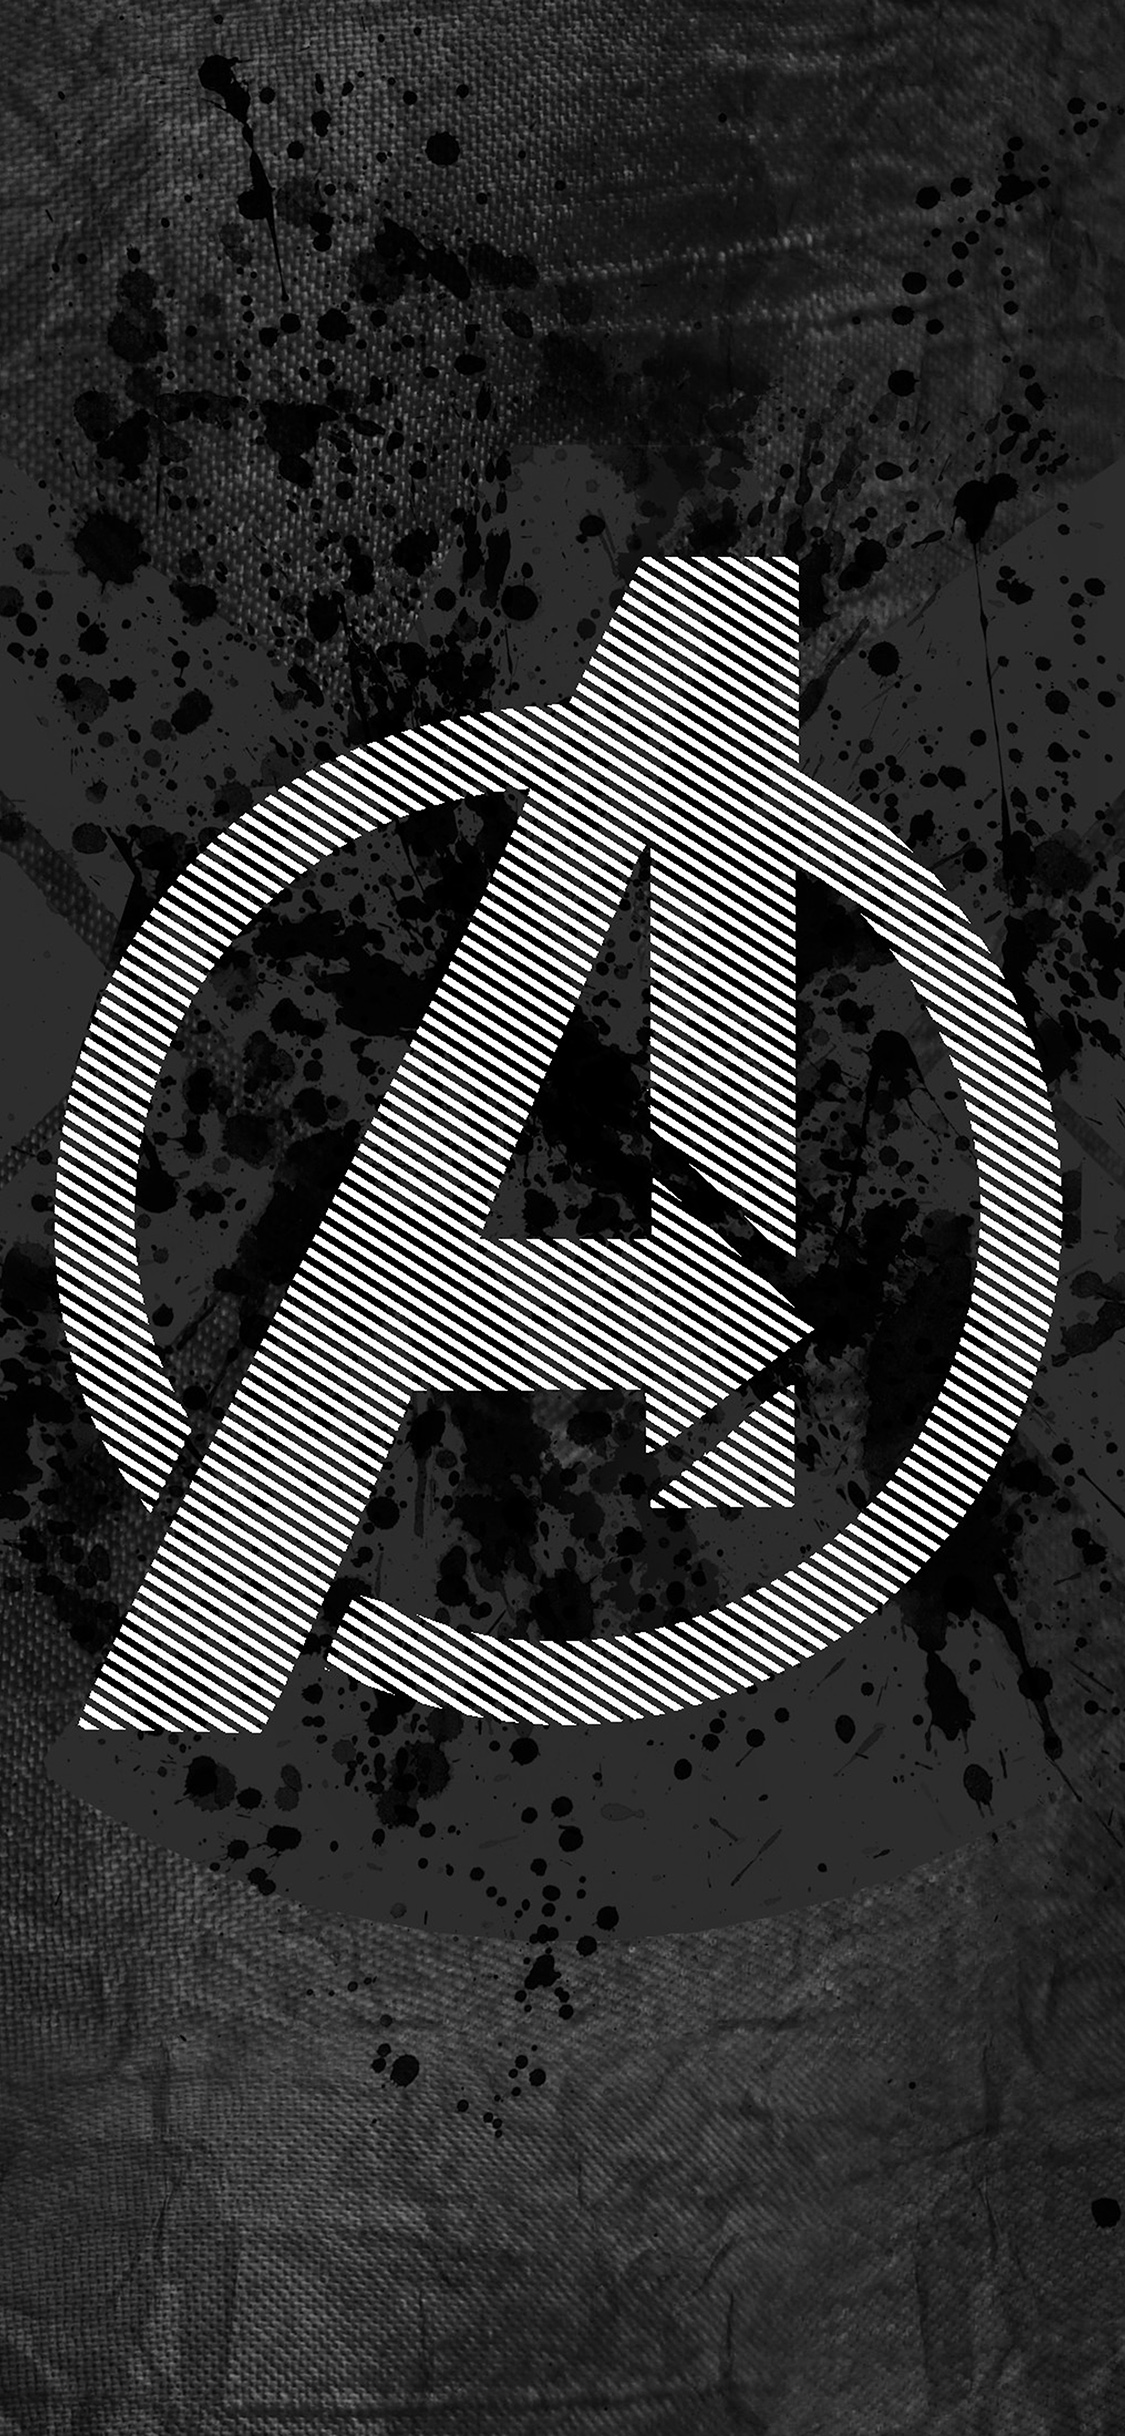 Avengers logo art iPhone wallpaper 